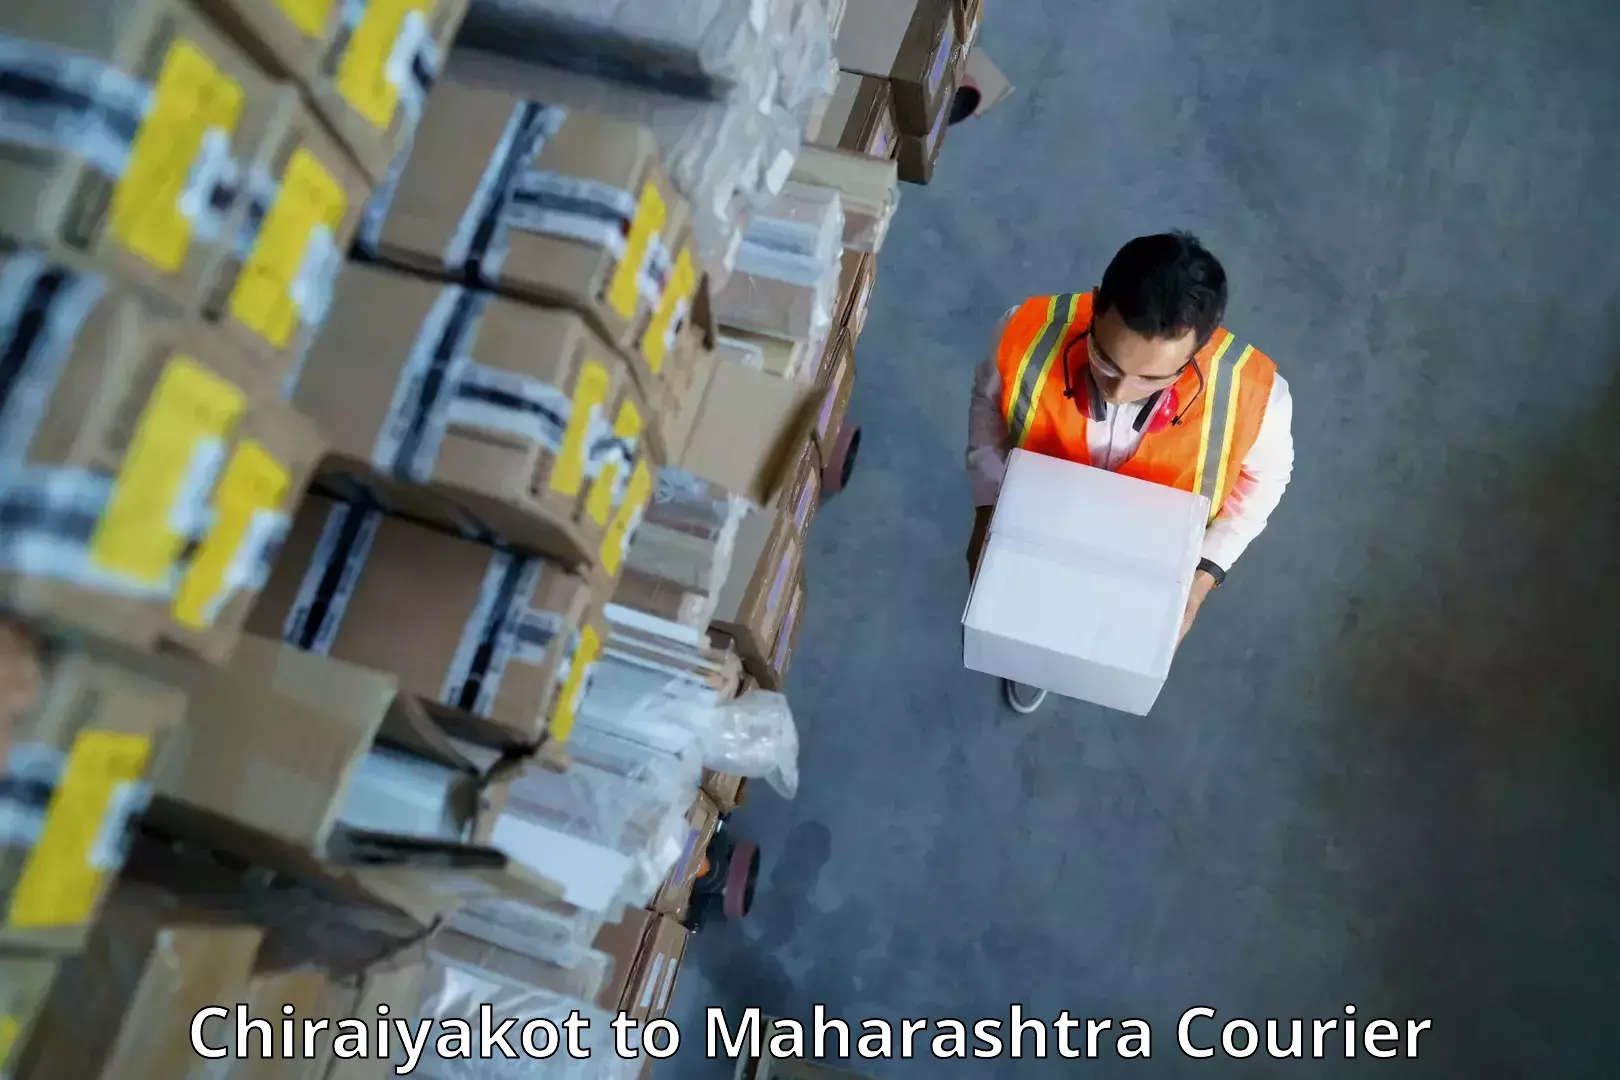 Fast-track shipping solutions Chiraiyakot to Maharashtra